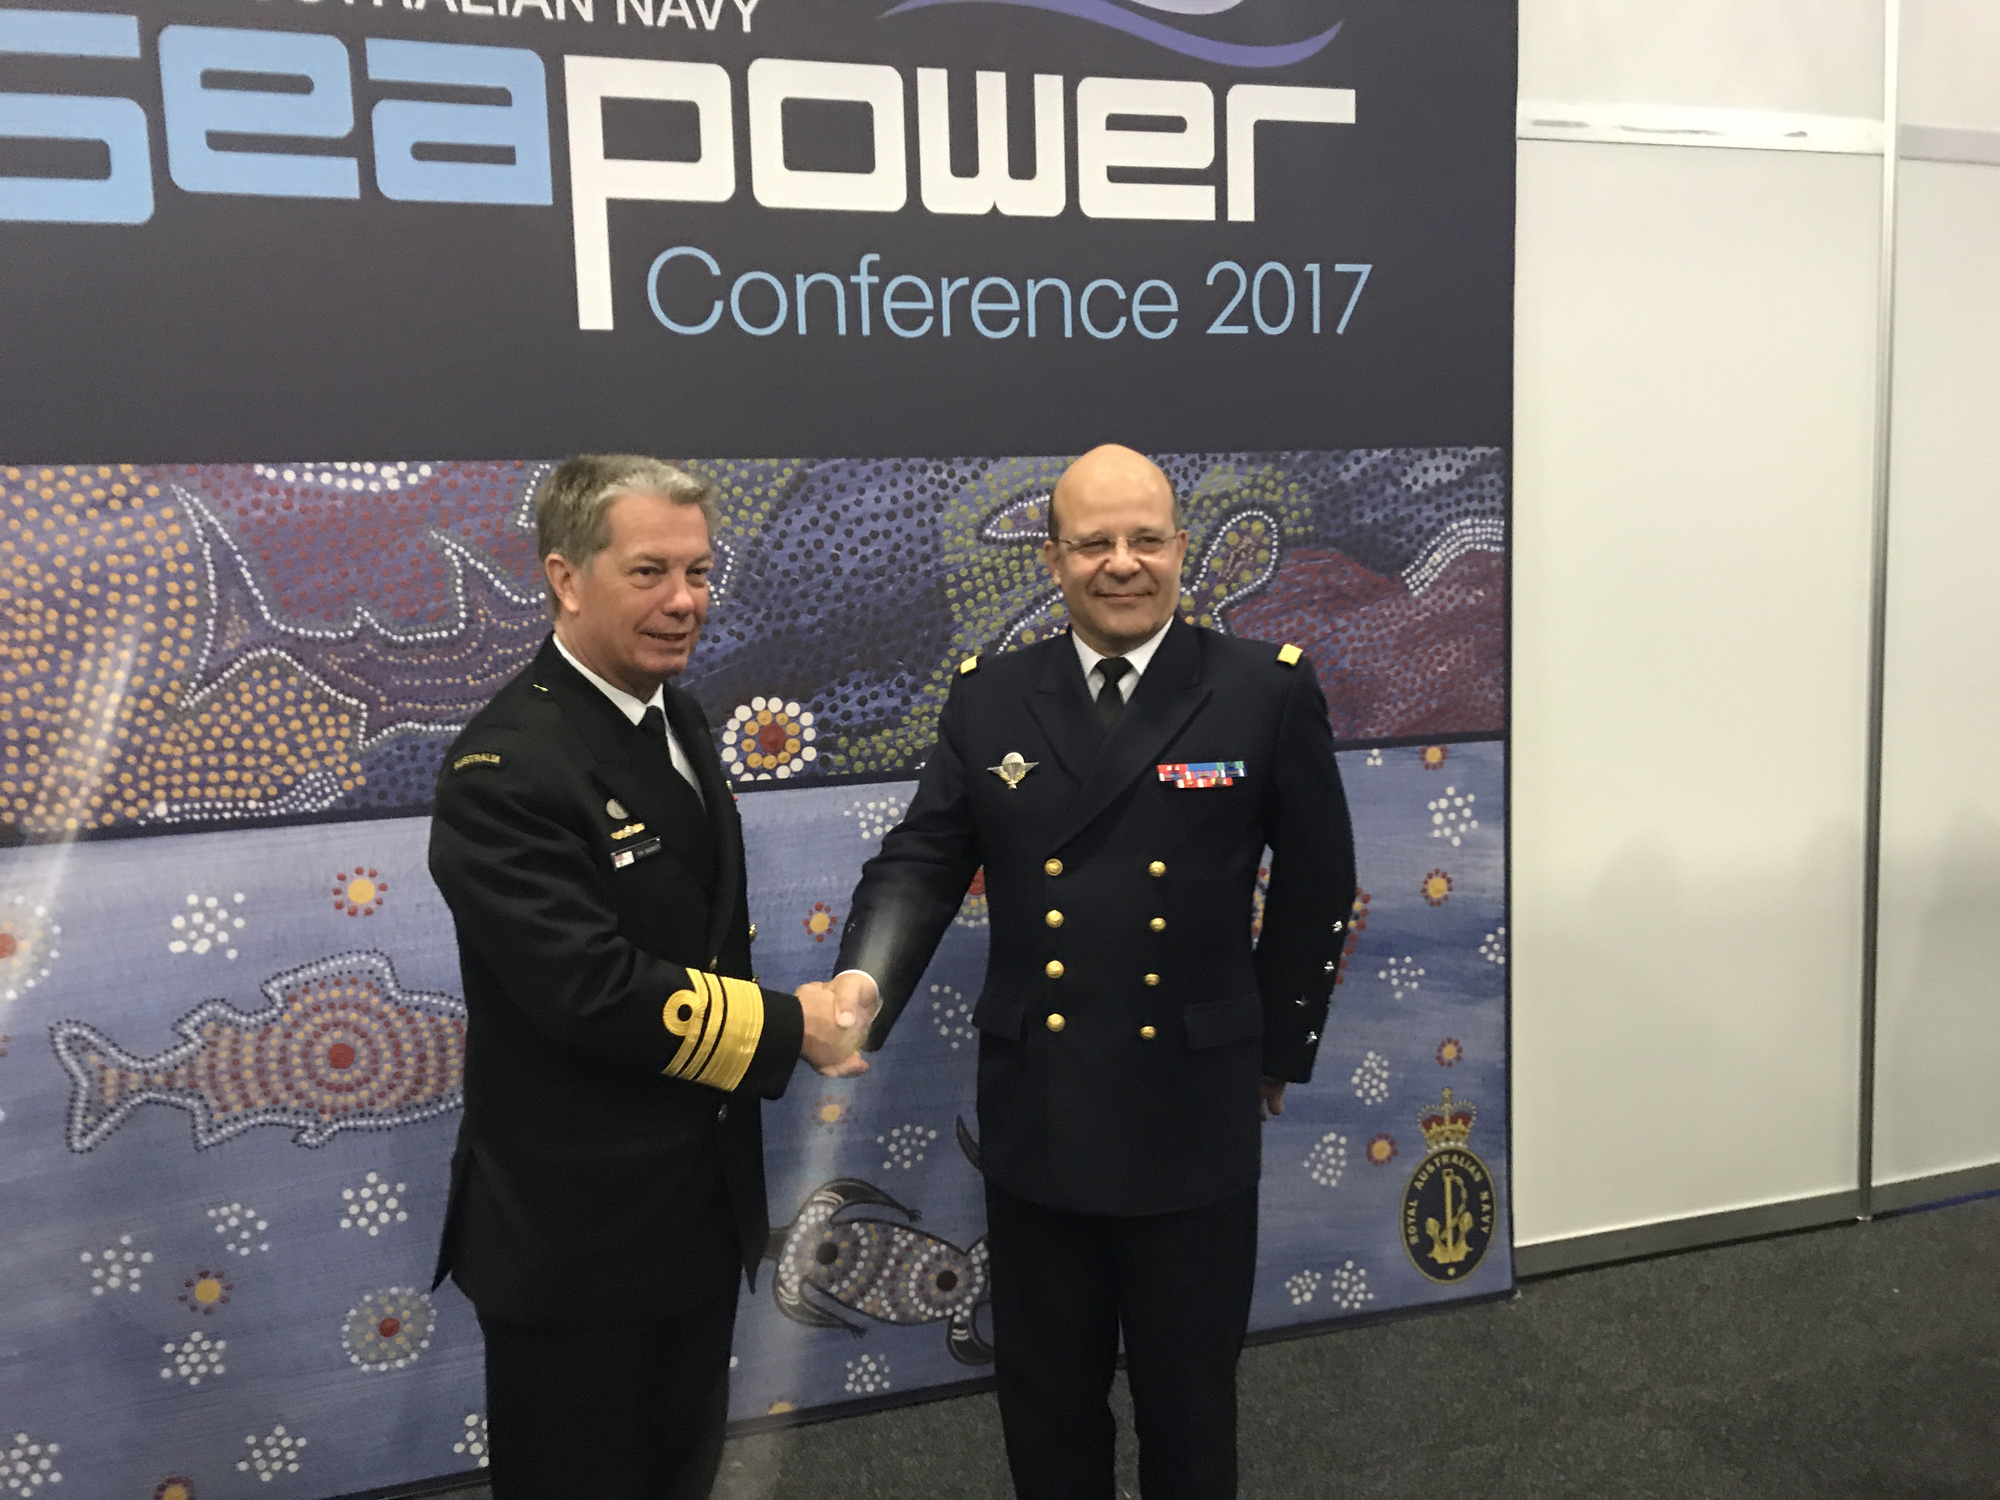 Le Chef d’état-major de la Marine à la Sea Power Conference